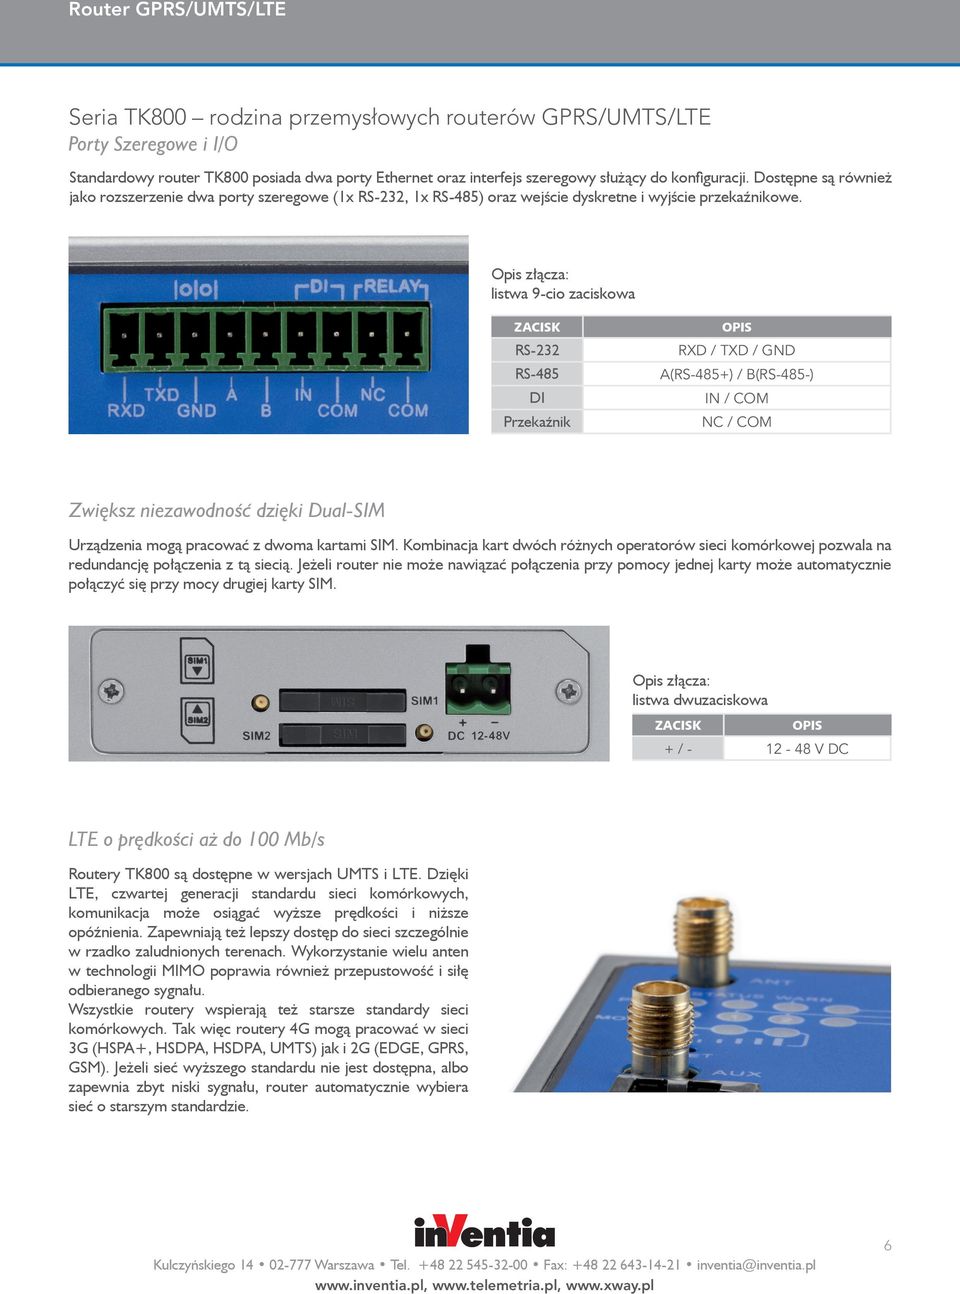 Opis złącza: listwa 9-cio zaciskowa ZACISK RS-232 RS-485 DI Przekaźnik OPIS RXD / TXD / GND A(RS-485+) / B(RS-485-) IN / COM NC / COM Zwiększ niezawodność dzięki Dual-SIM Urządzenia mogą pracować z